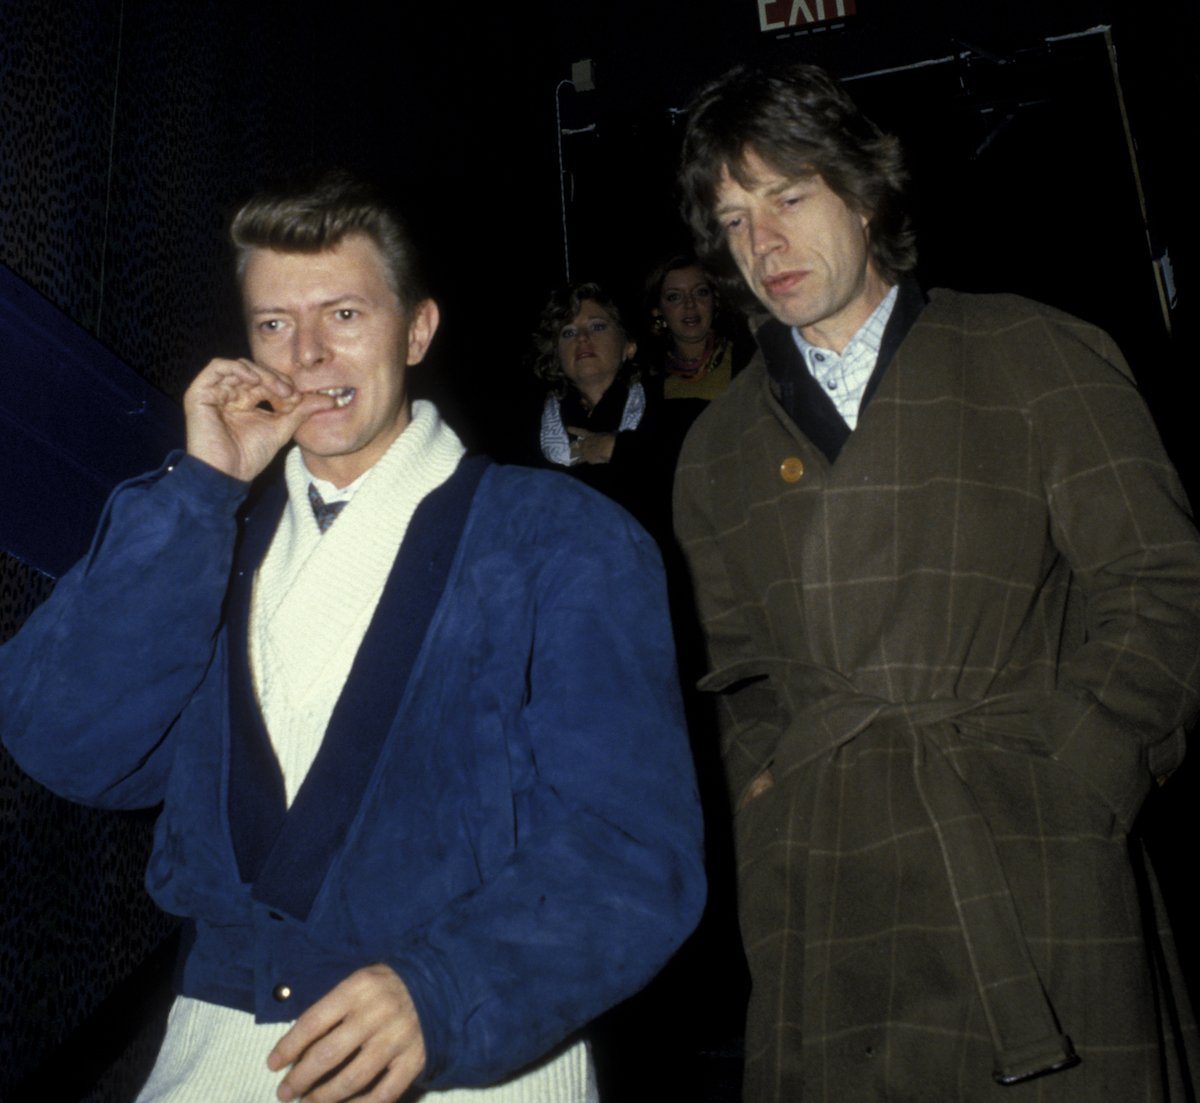 Les musiciens David Bowie et Mick Jagger passent devant des paparazzis en 1985